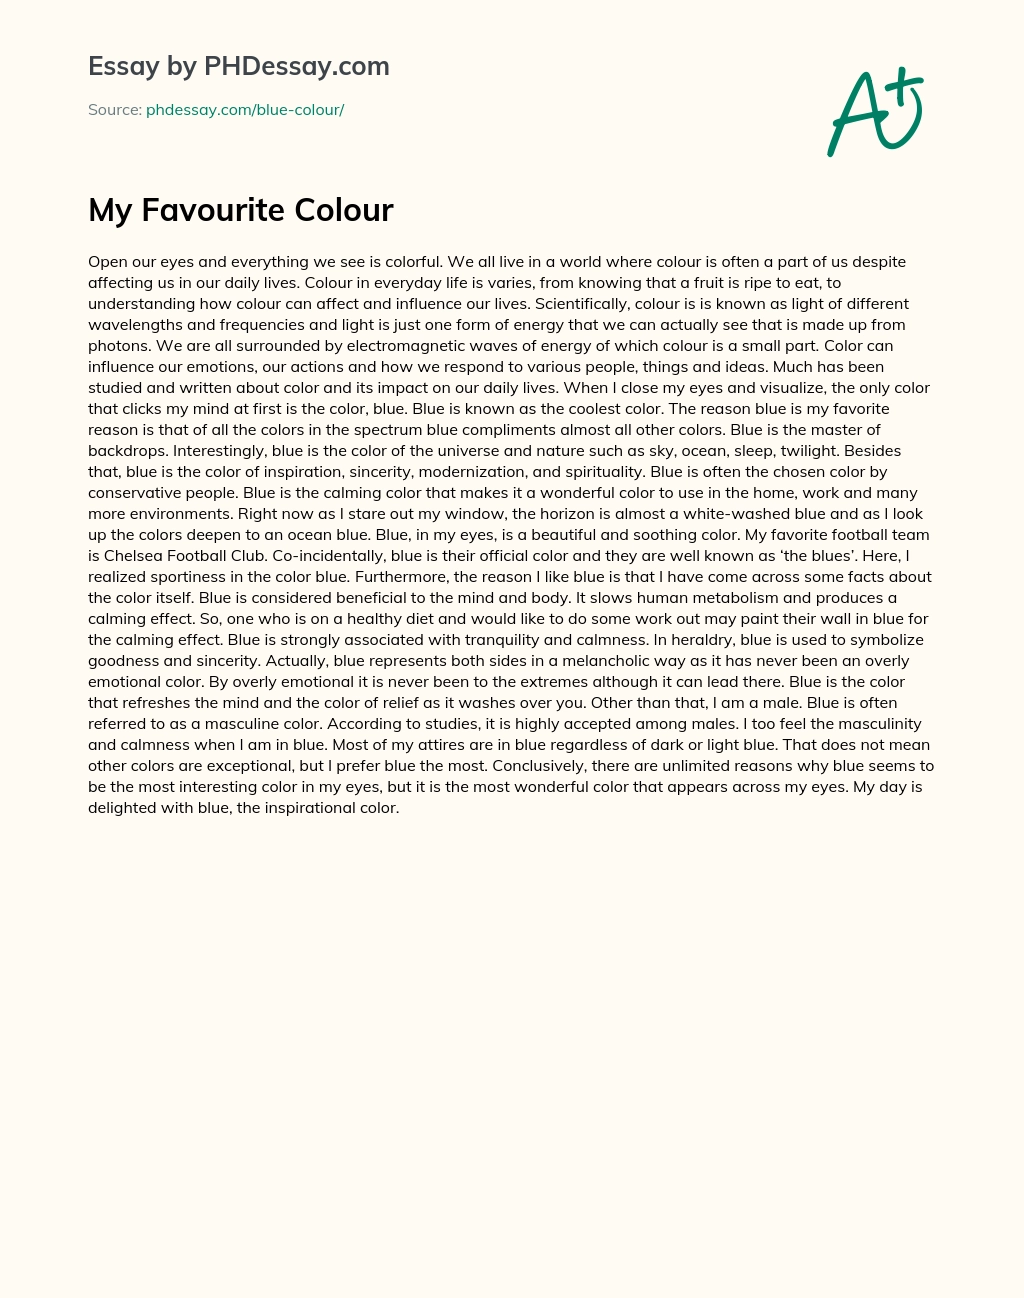 My Favourite Colour essay